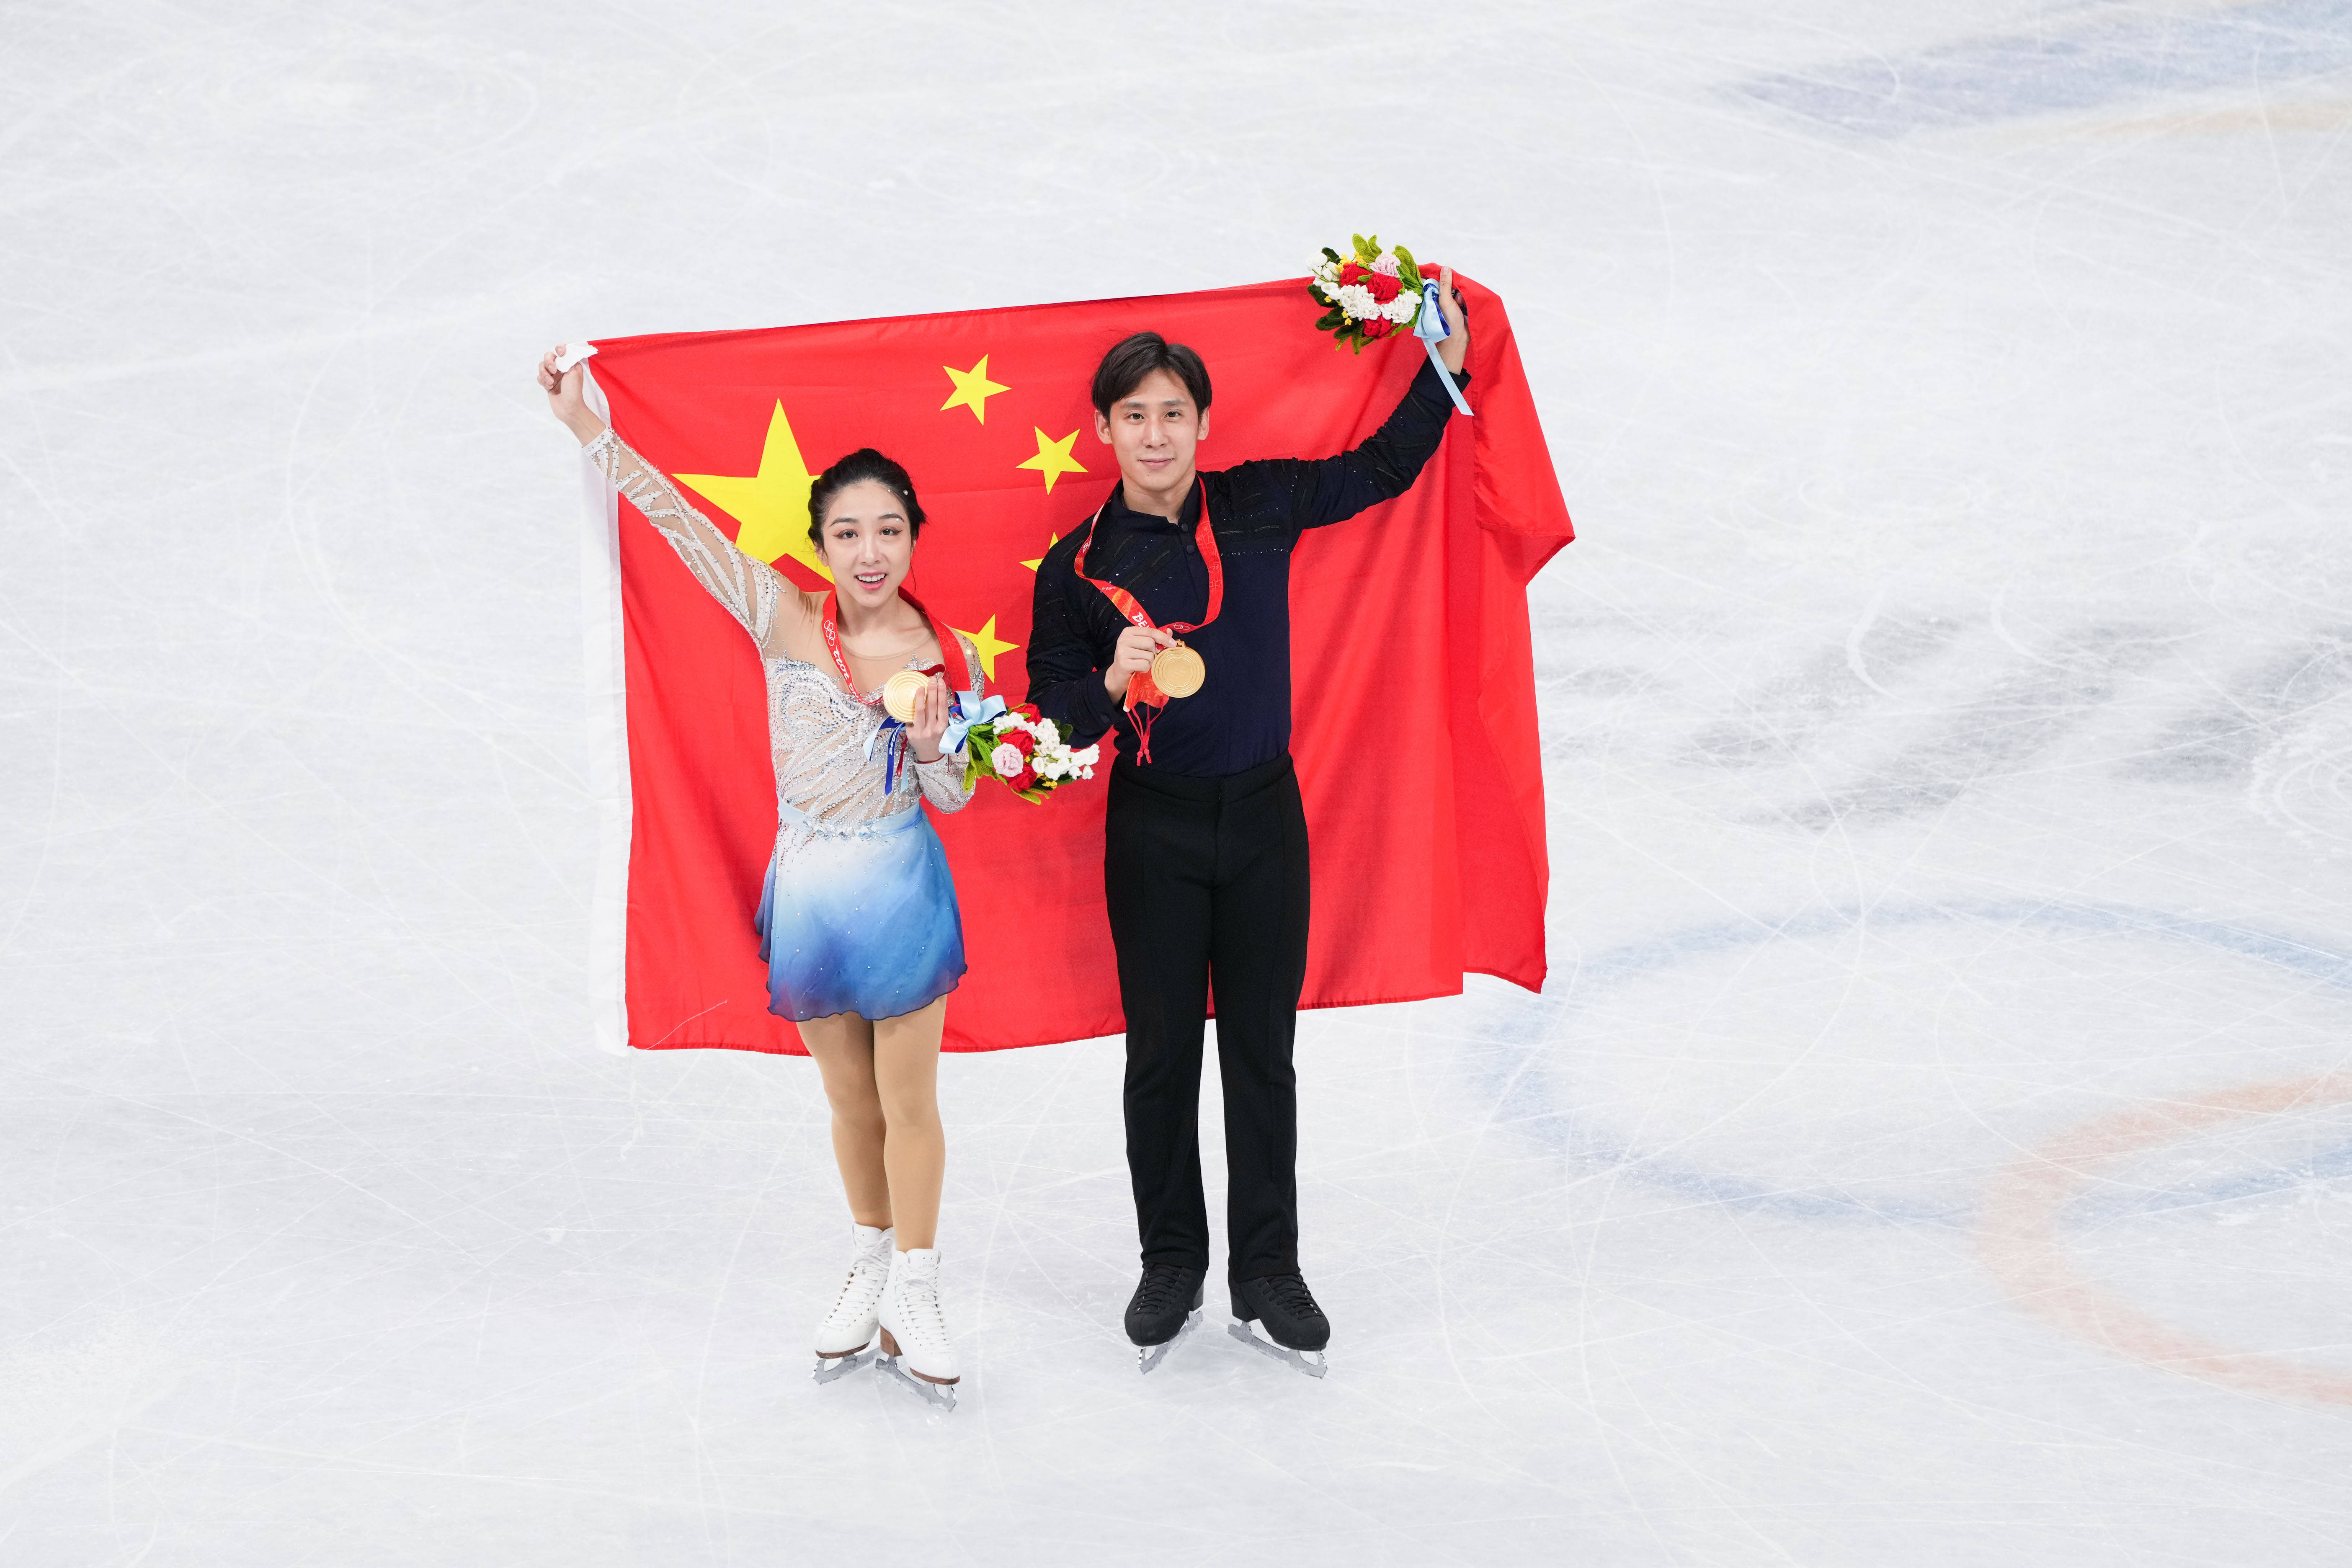 中国双人滑选手图片